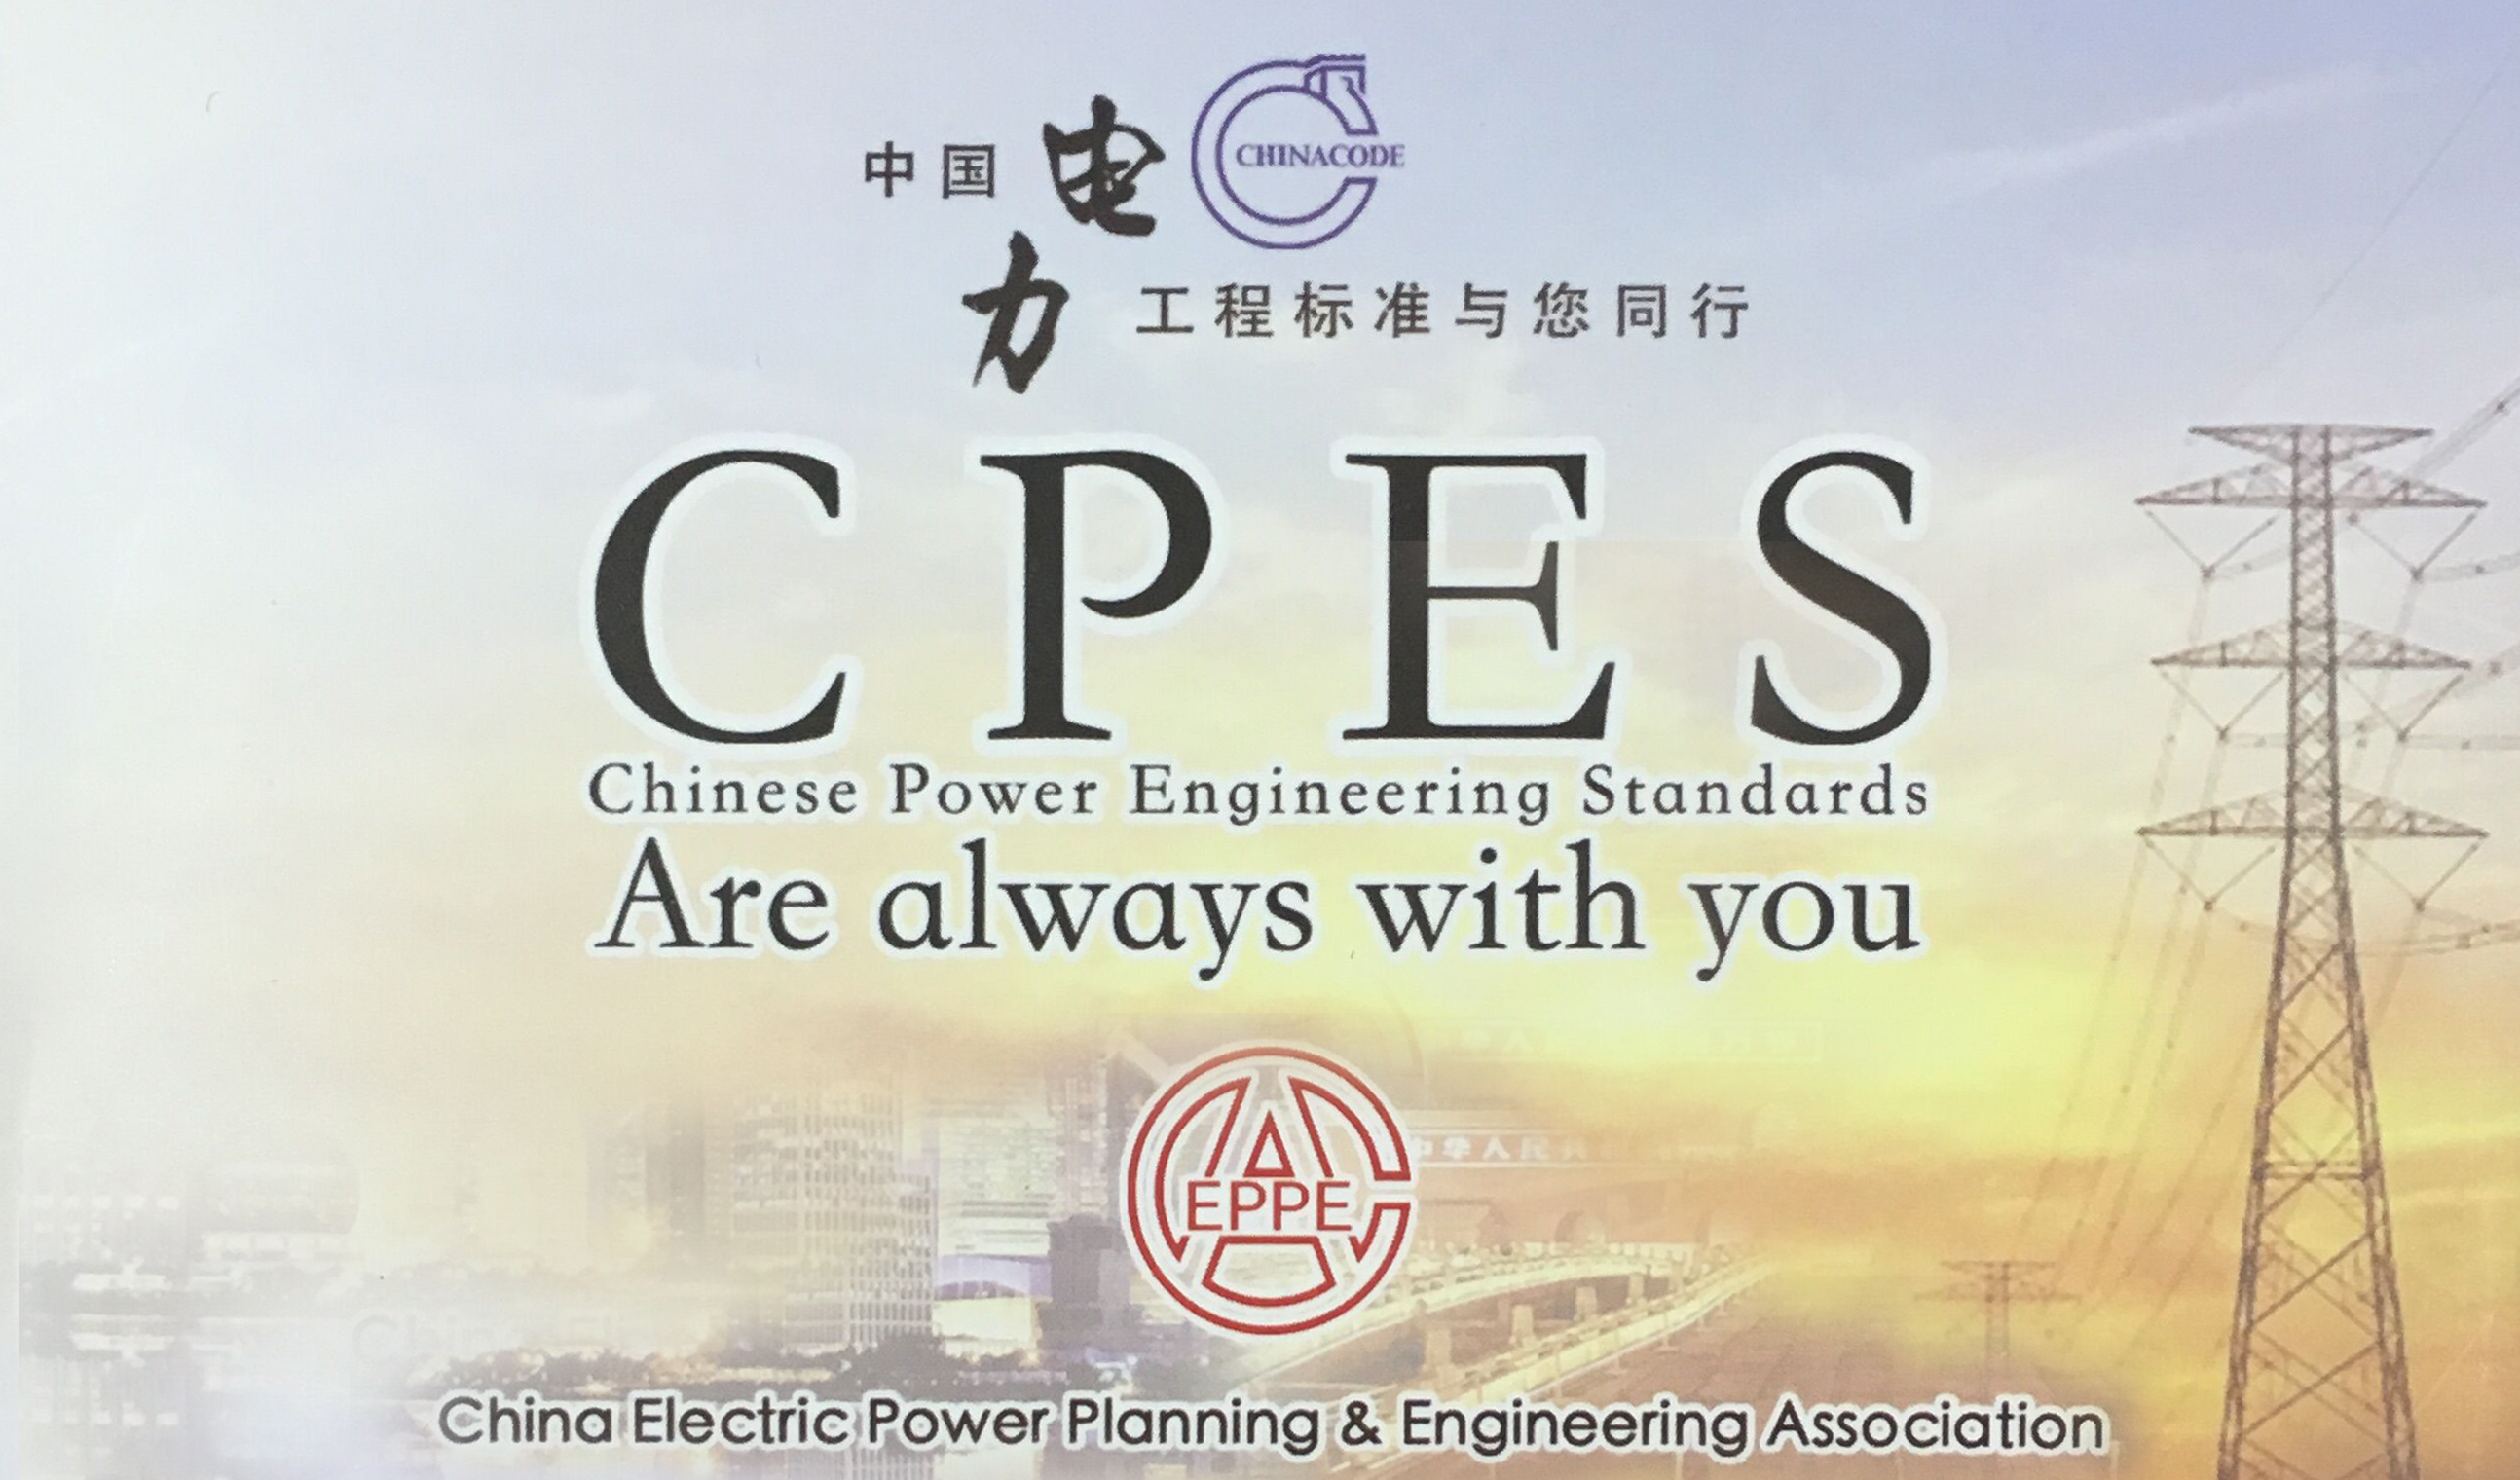 中国电力工程标准与您同行